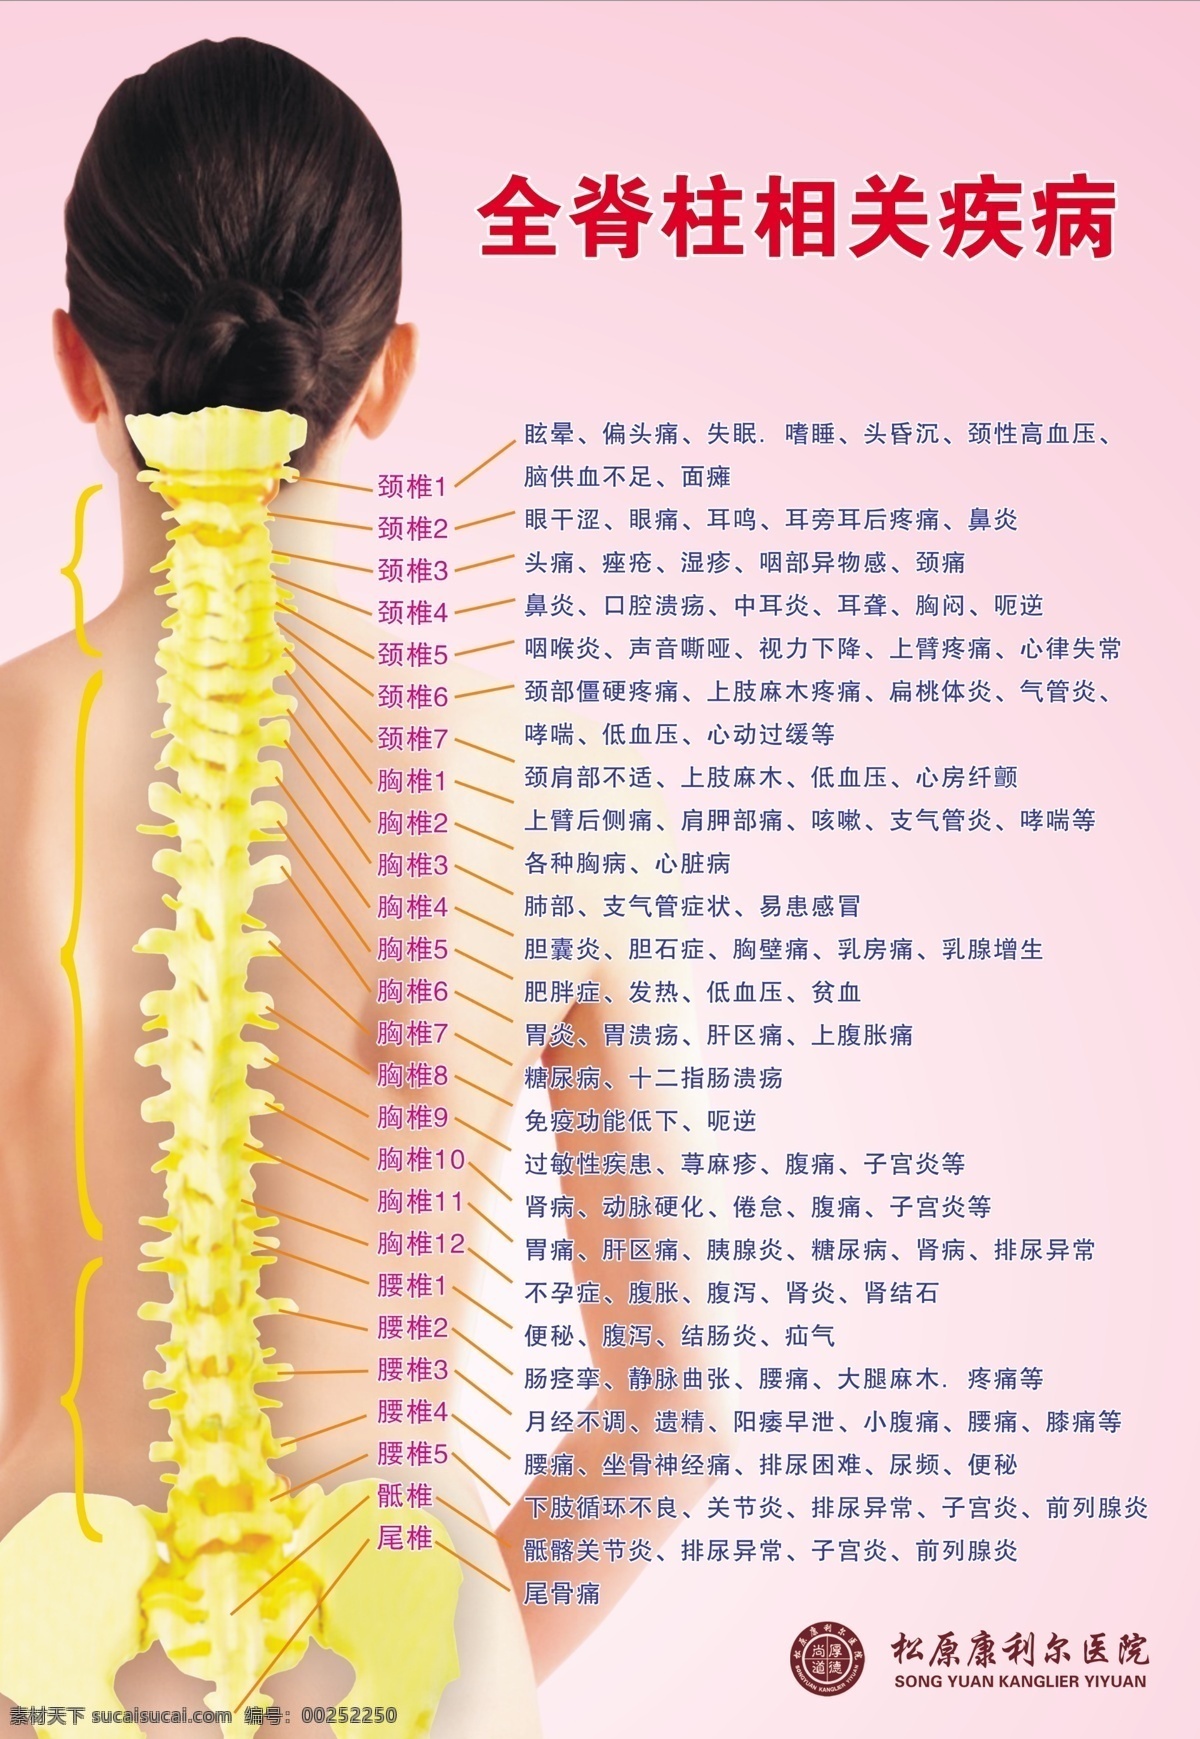 脊椎图 人体骨骼 脊椎疾病 穴位图 穴位表 气泡 分层